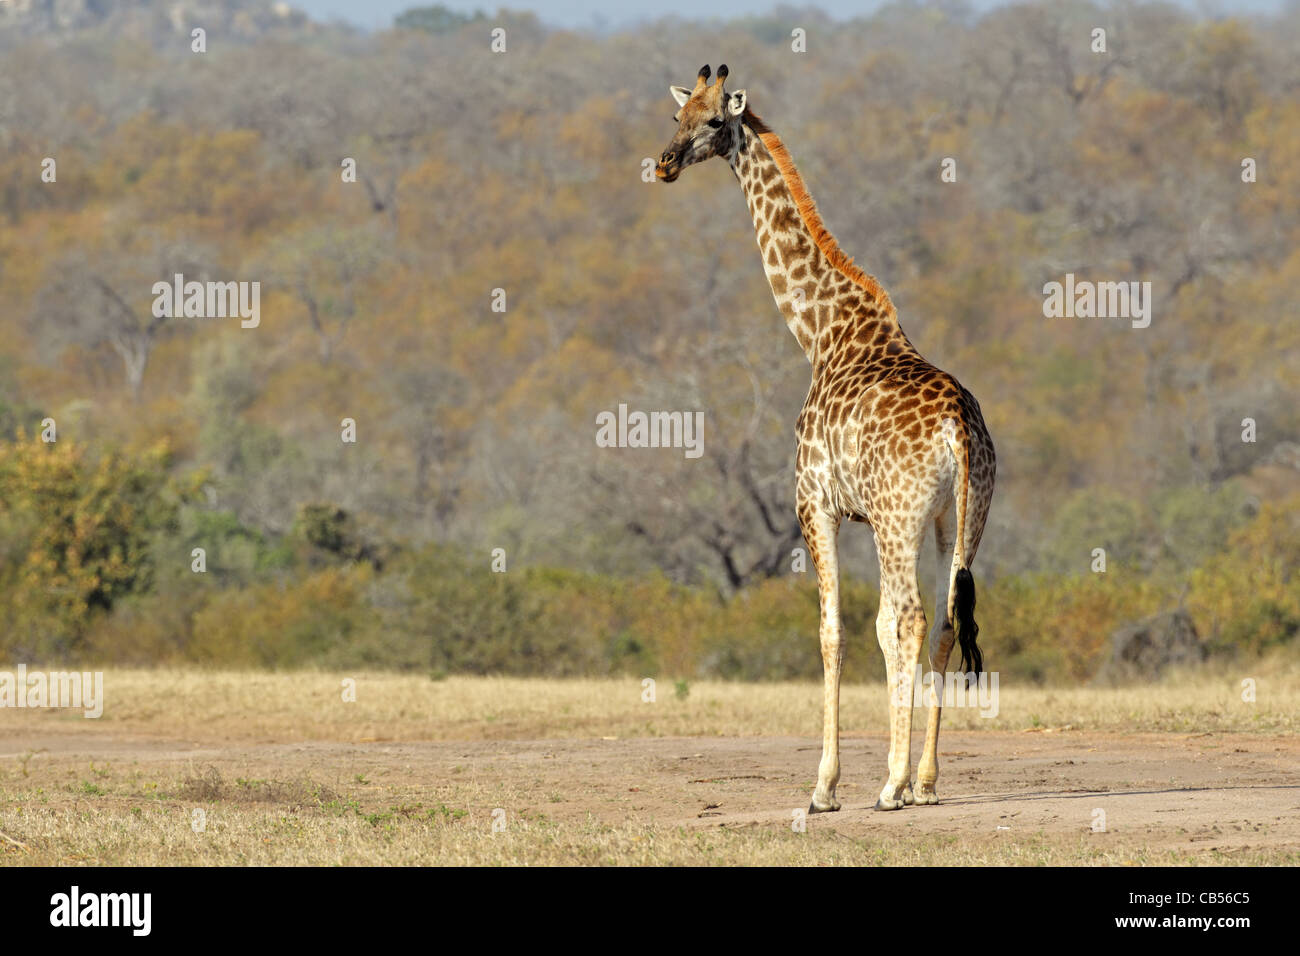 Giraffe (Giraffa camelopardalis) in the African savanna Stock Photo